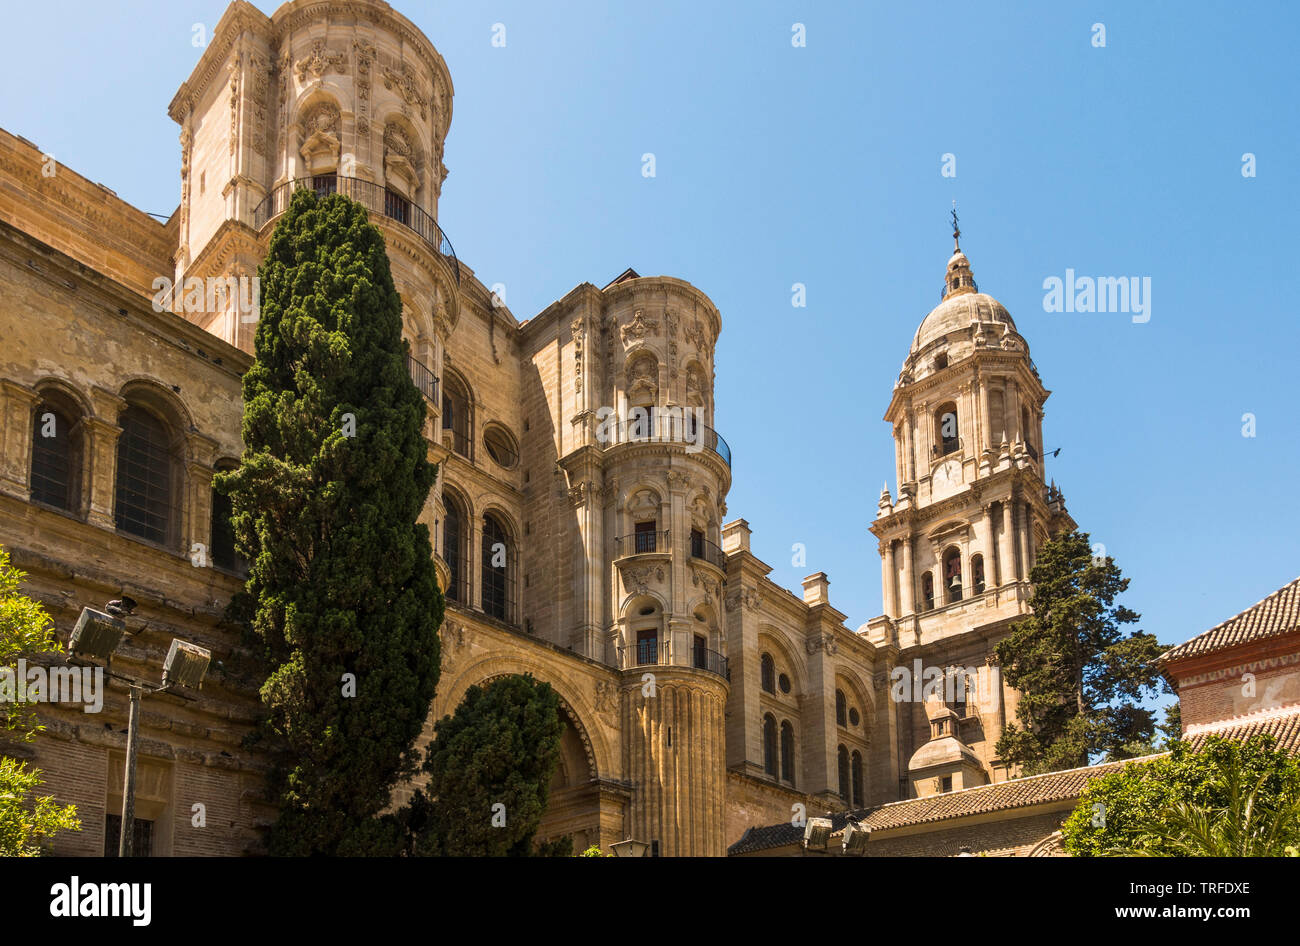 Die Kathedrale von Malaga, Seitenansicht, Malaga, Andalusien, Spanien. Stockfoto